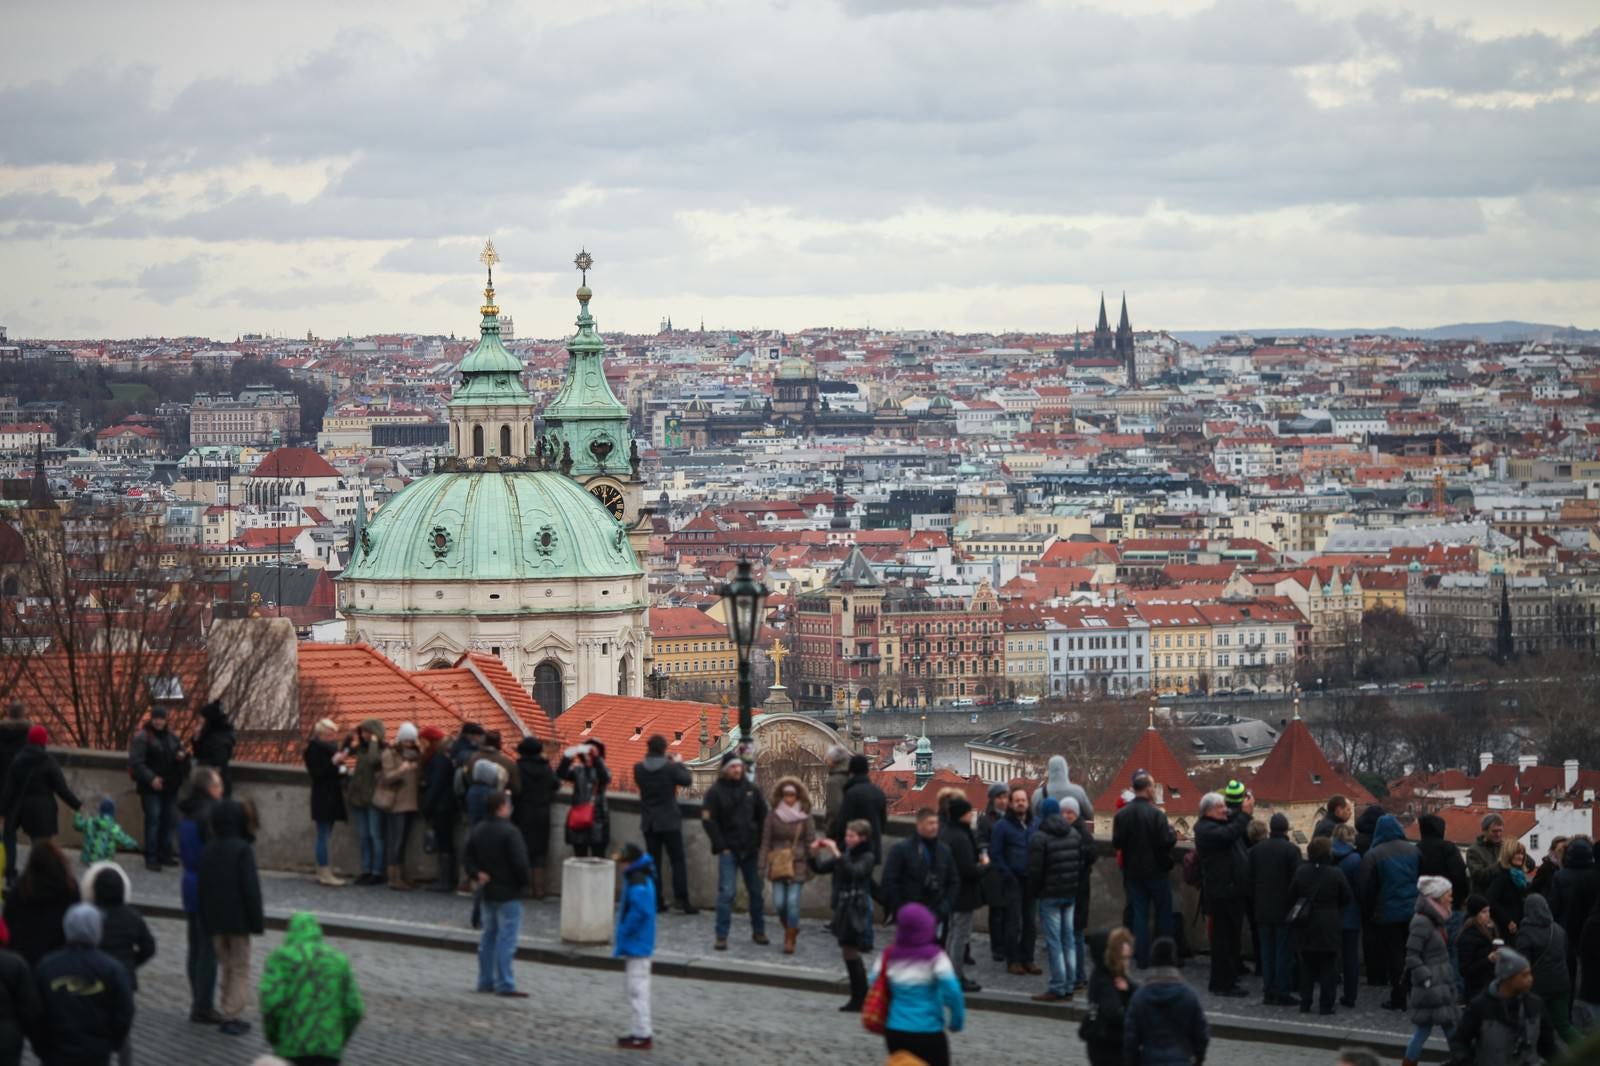 「観光客が集まるチェコ・プラハの街並み」の写真